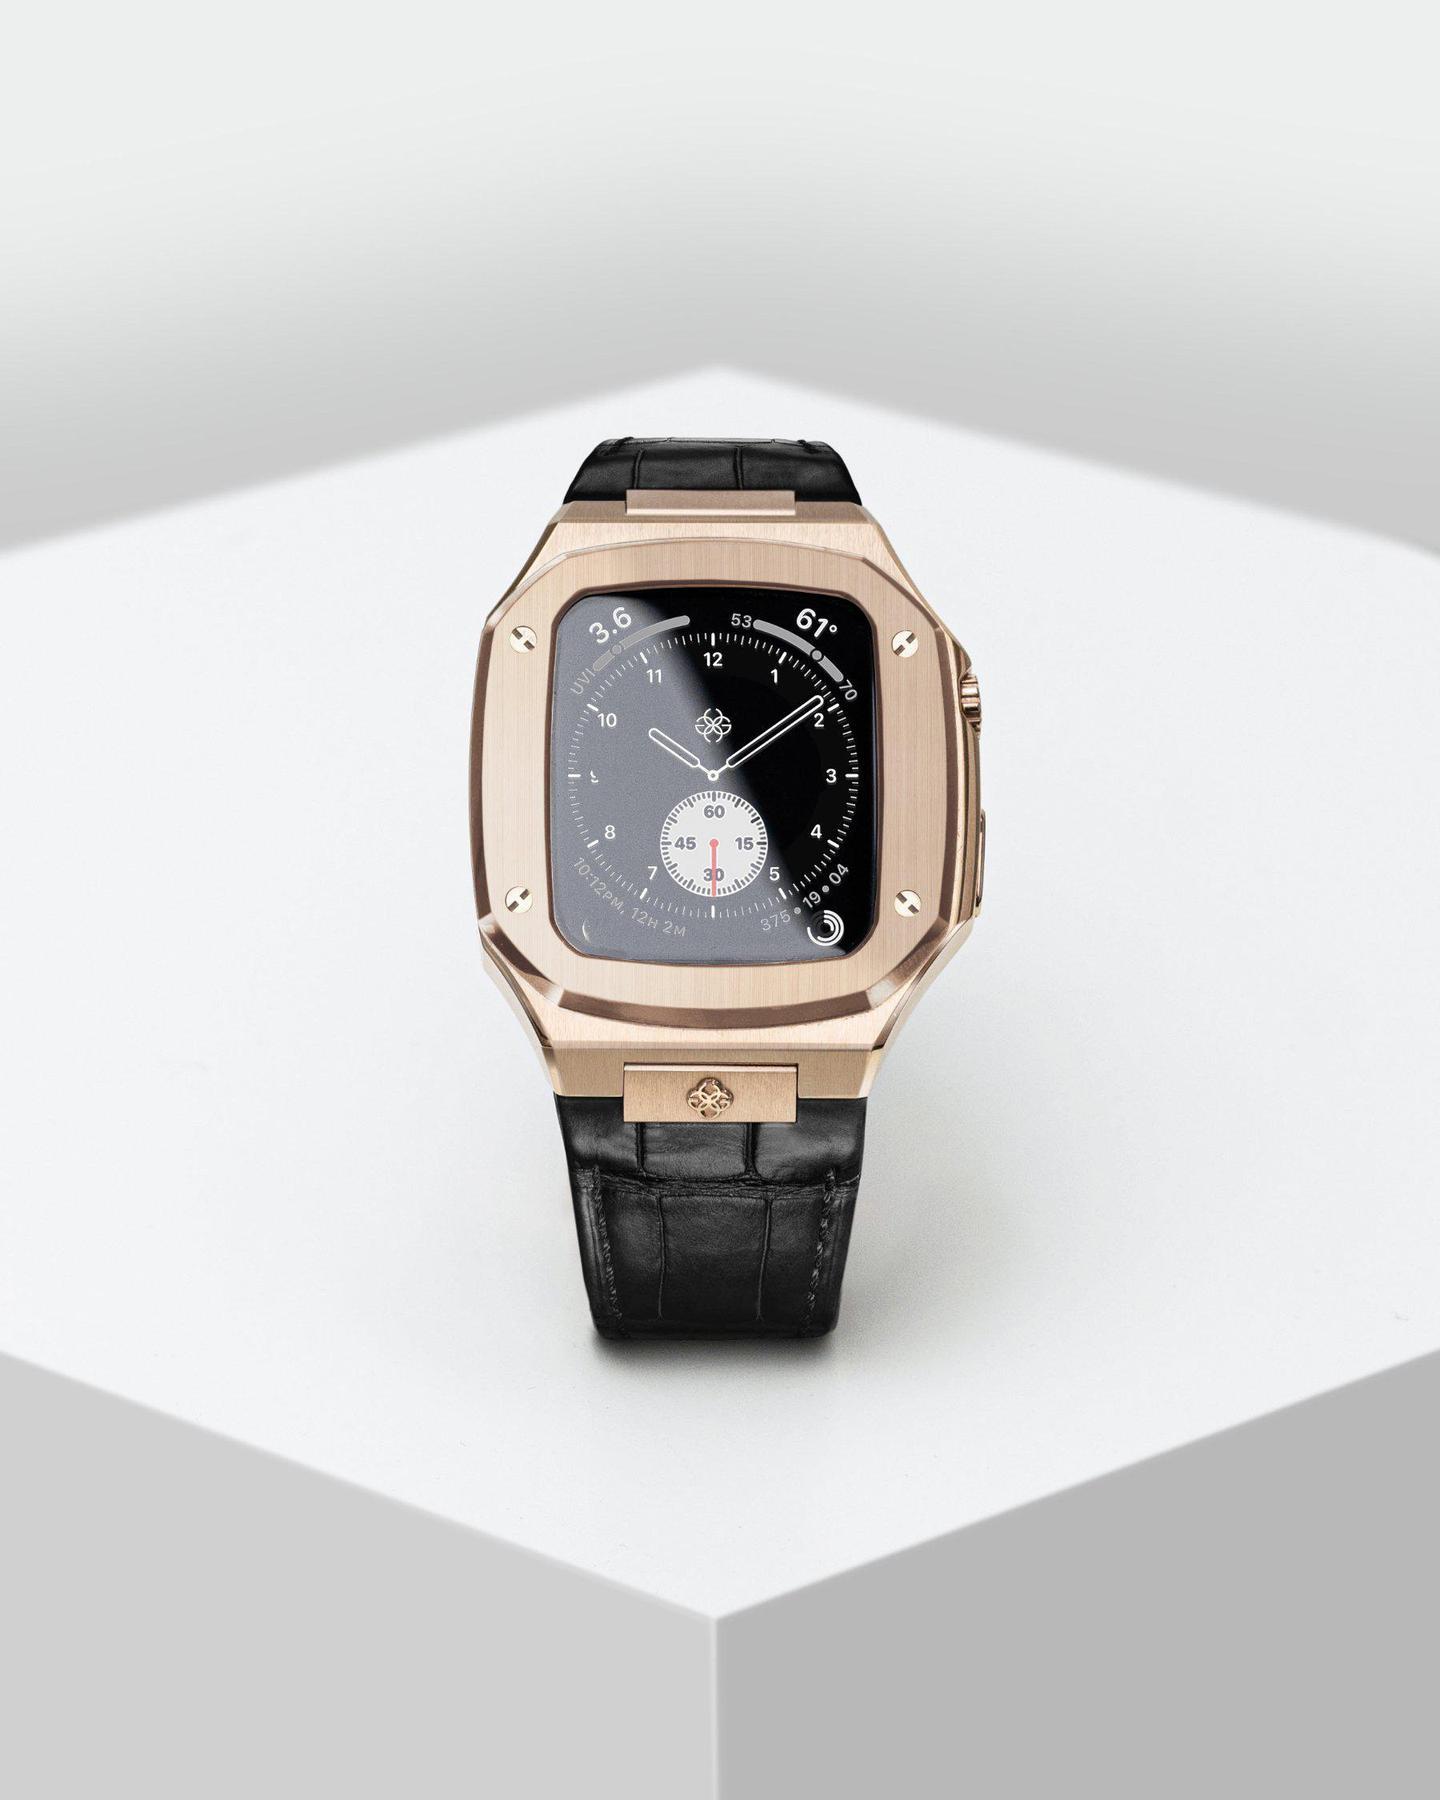 Apple Watchを高級腕時計にするスウェーデン製のケース。別モノに